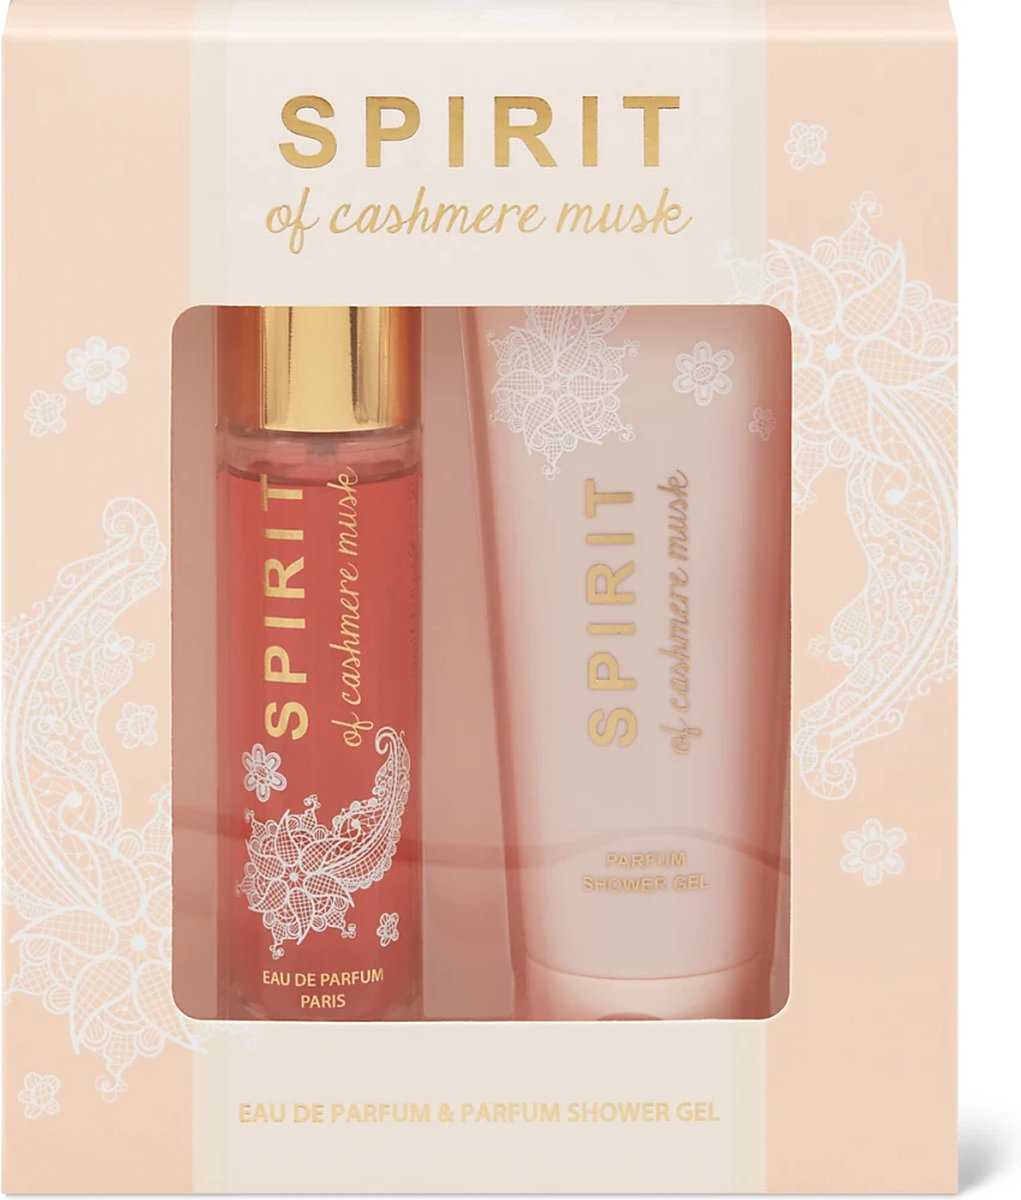 Spirit of cashmere musk - Eau de Parfum & Shower Gel - Geurengeschenkset - Giftset - Cadeauset.